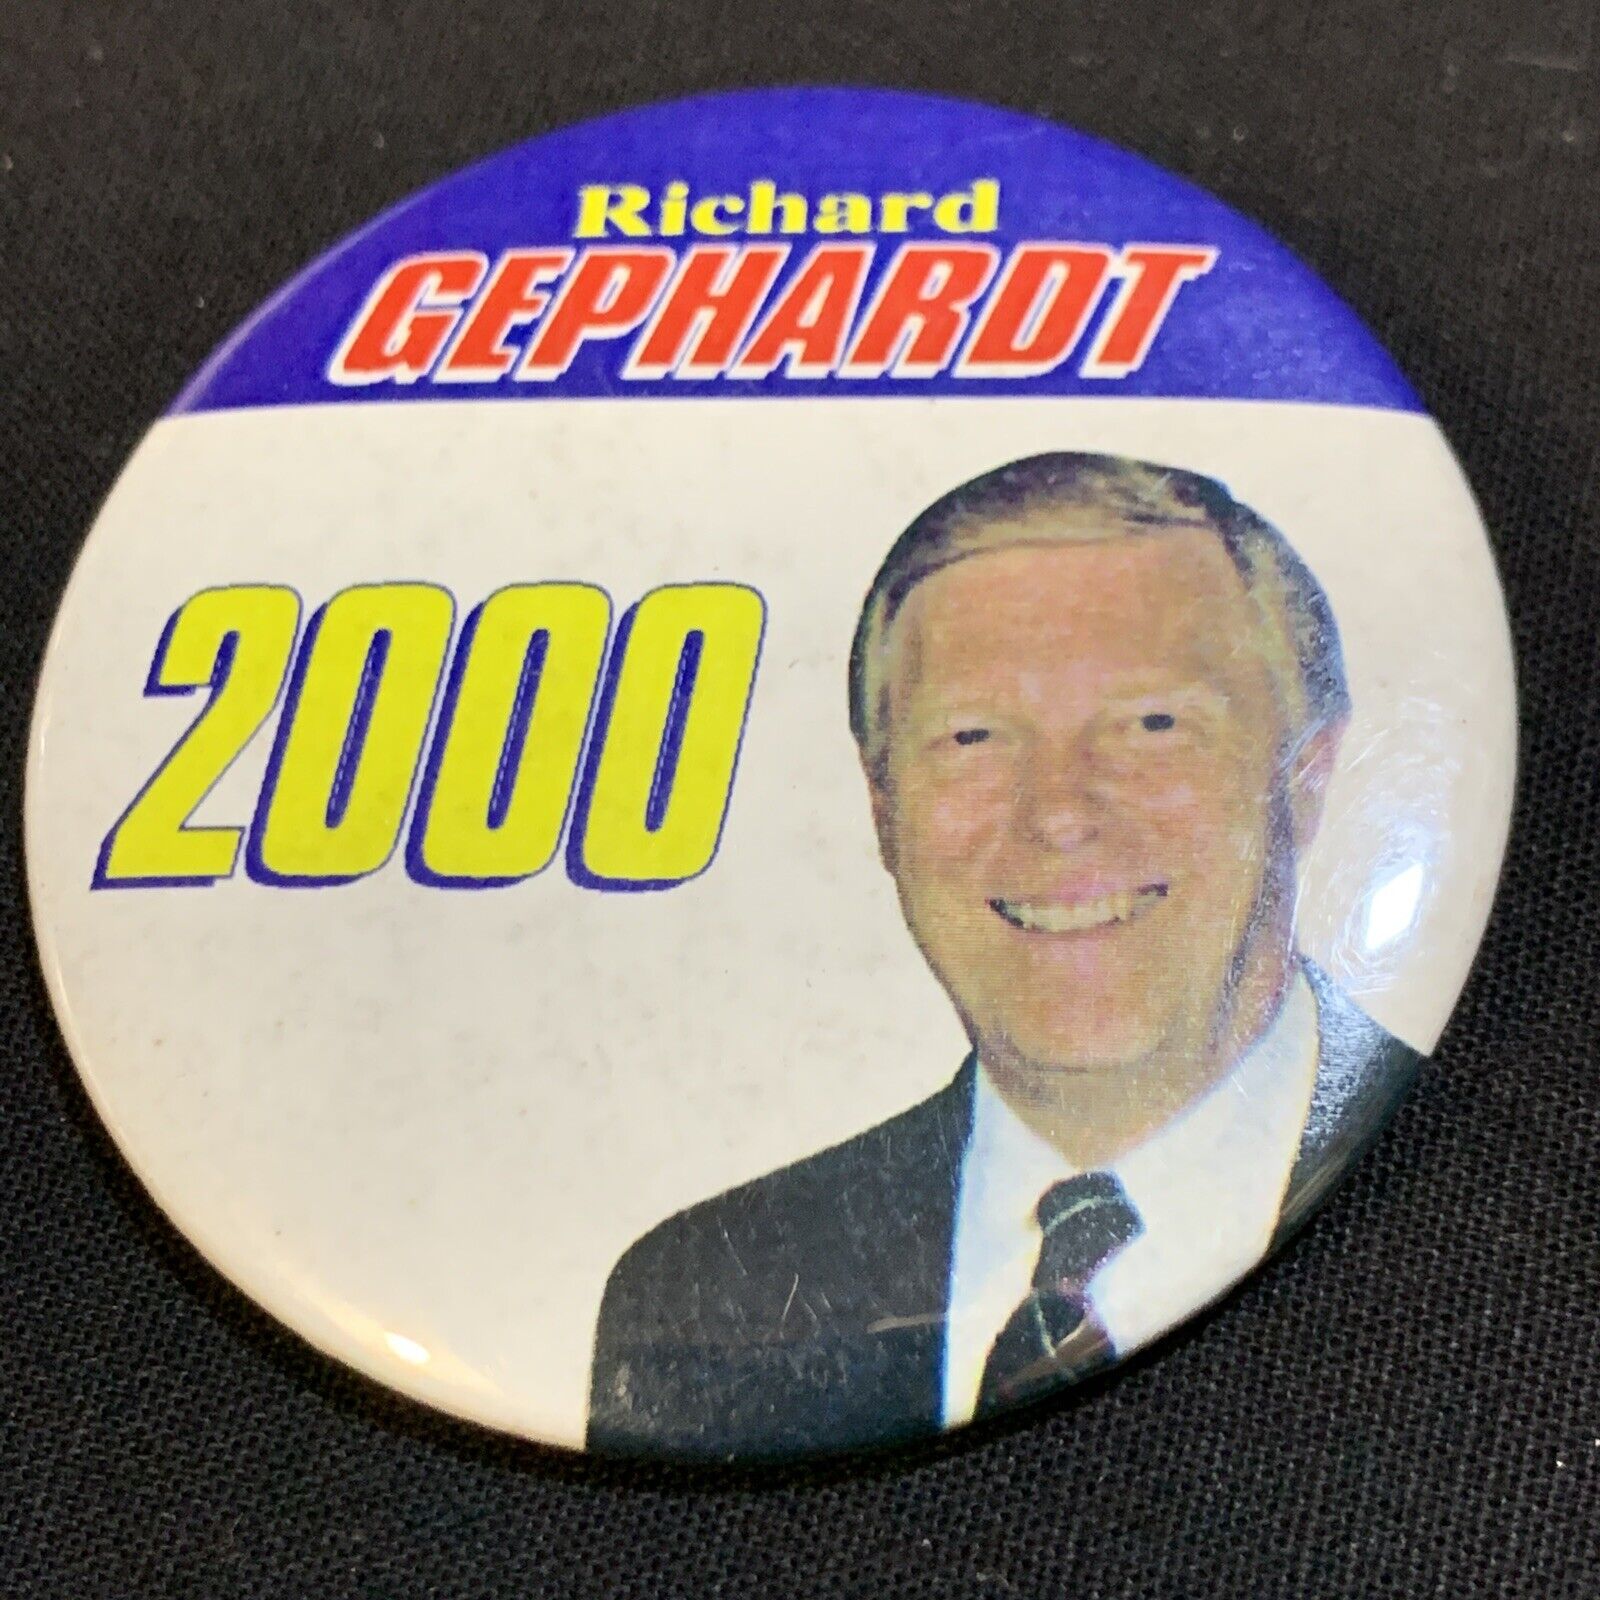 2000 Richard Dick Gephardt Democrat Campaign Button Pin Political Election KG